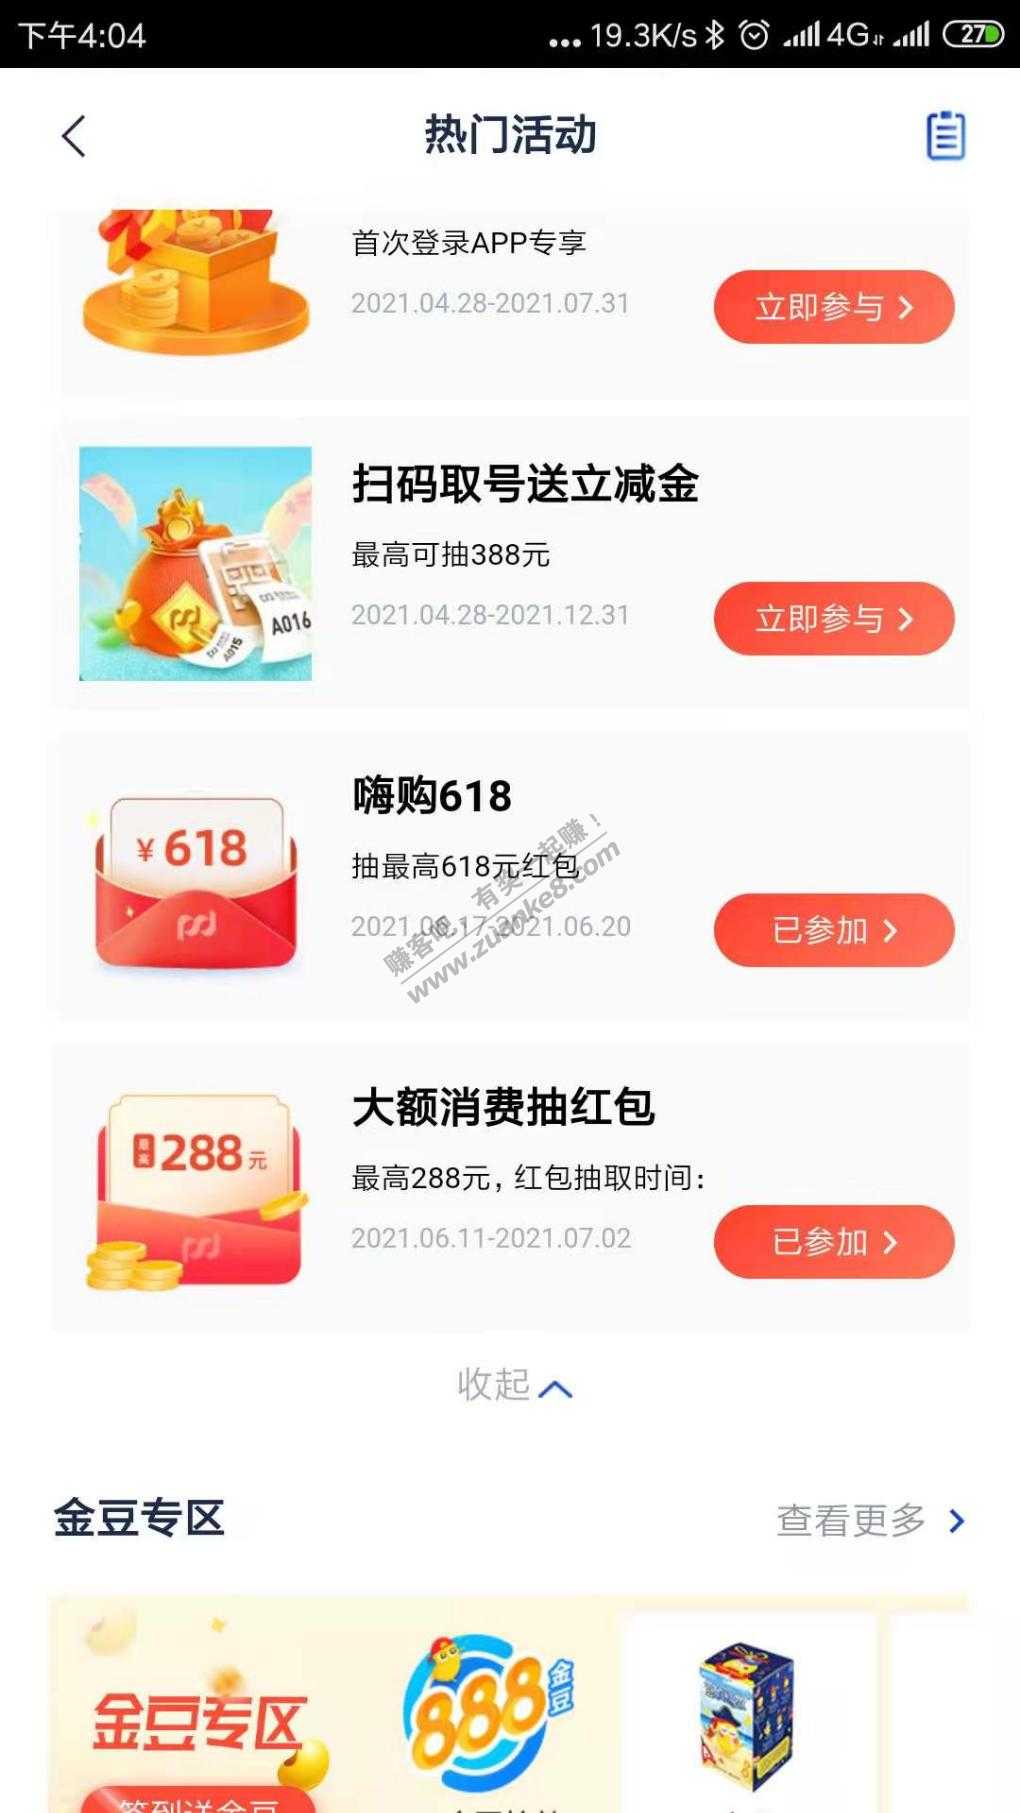 浦发银行嗨购618支付宝红包-惠小助(52huixz.com)